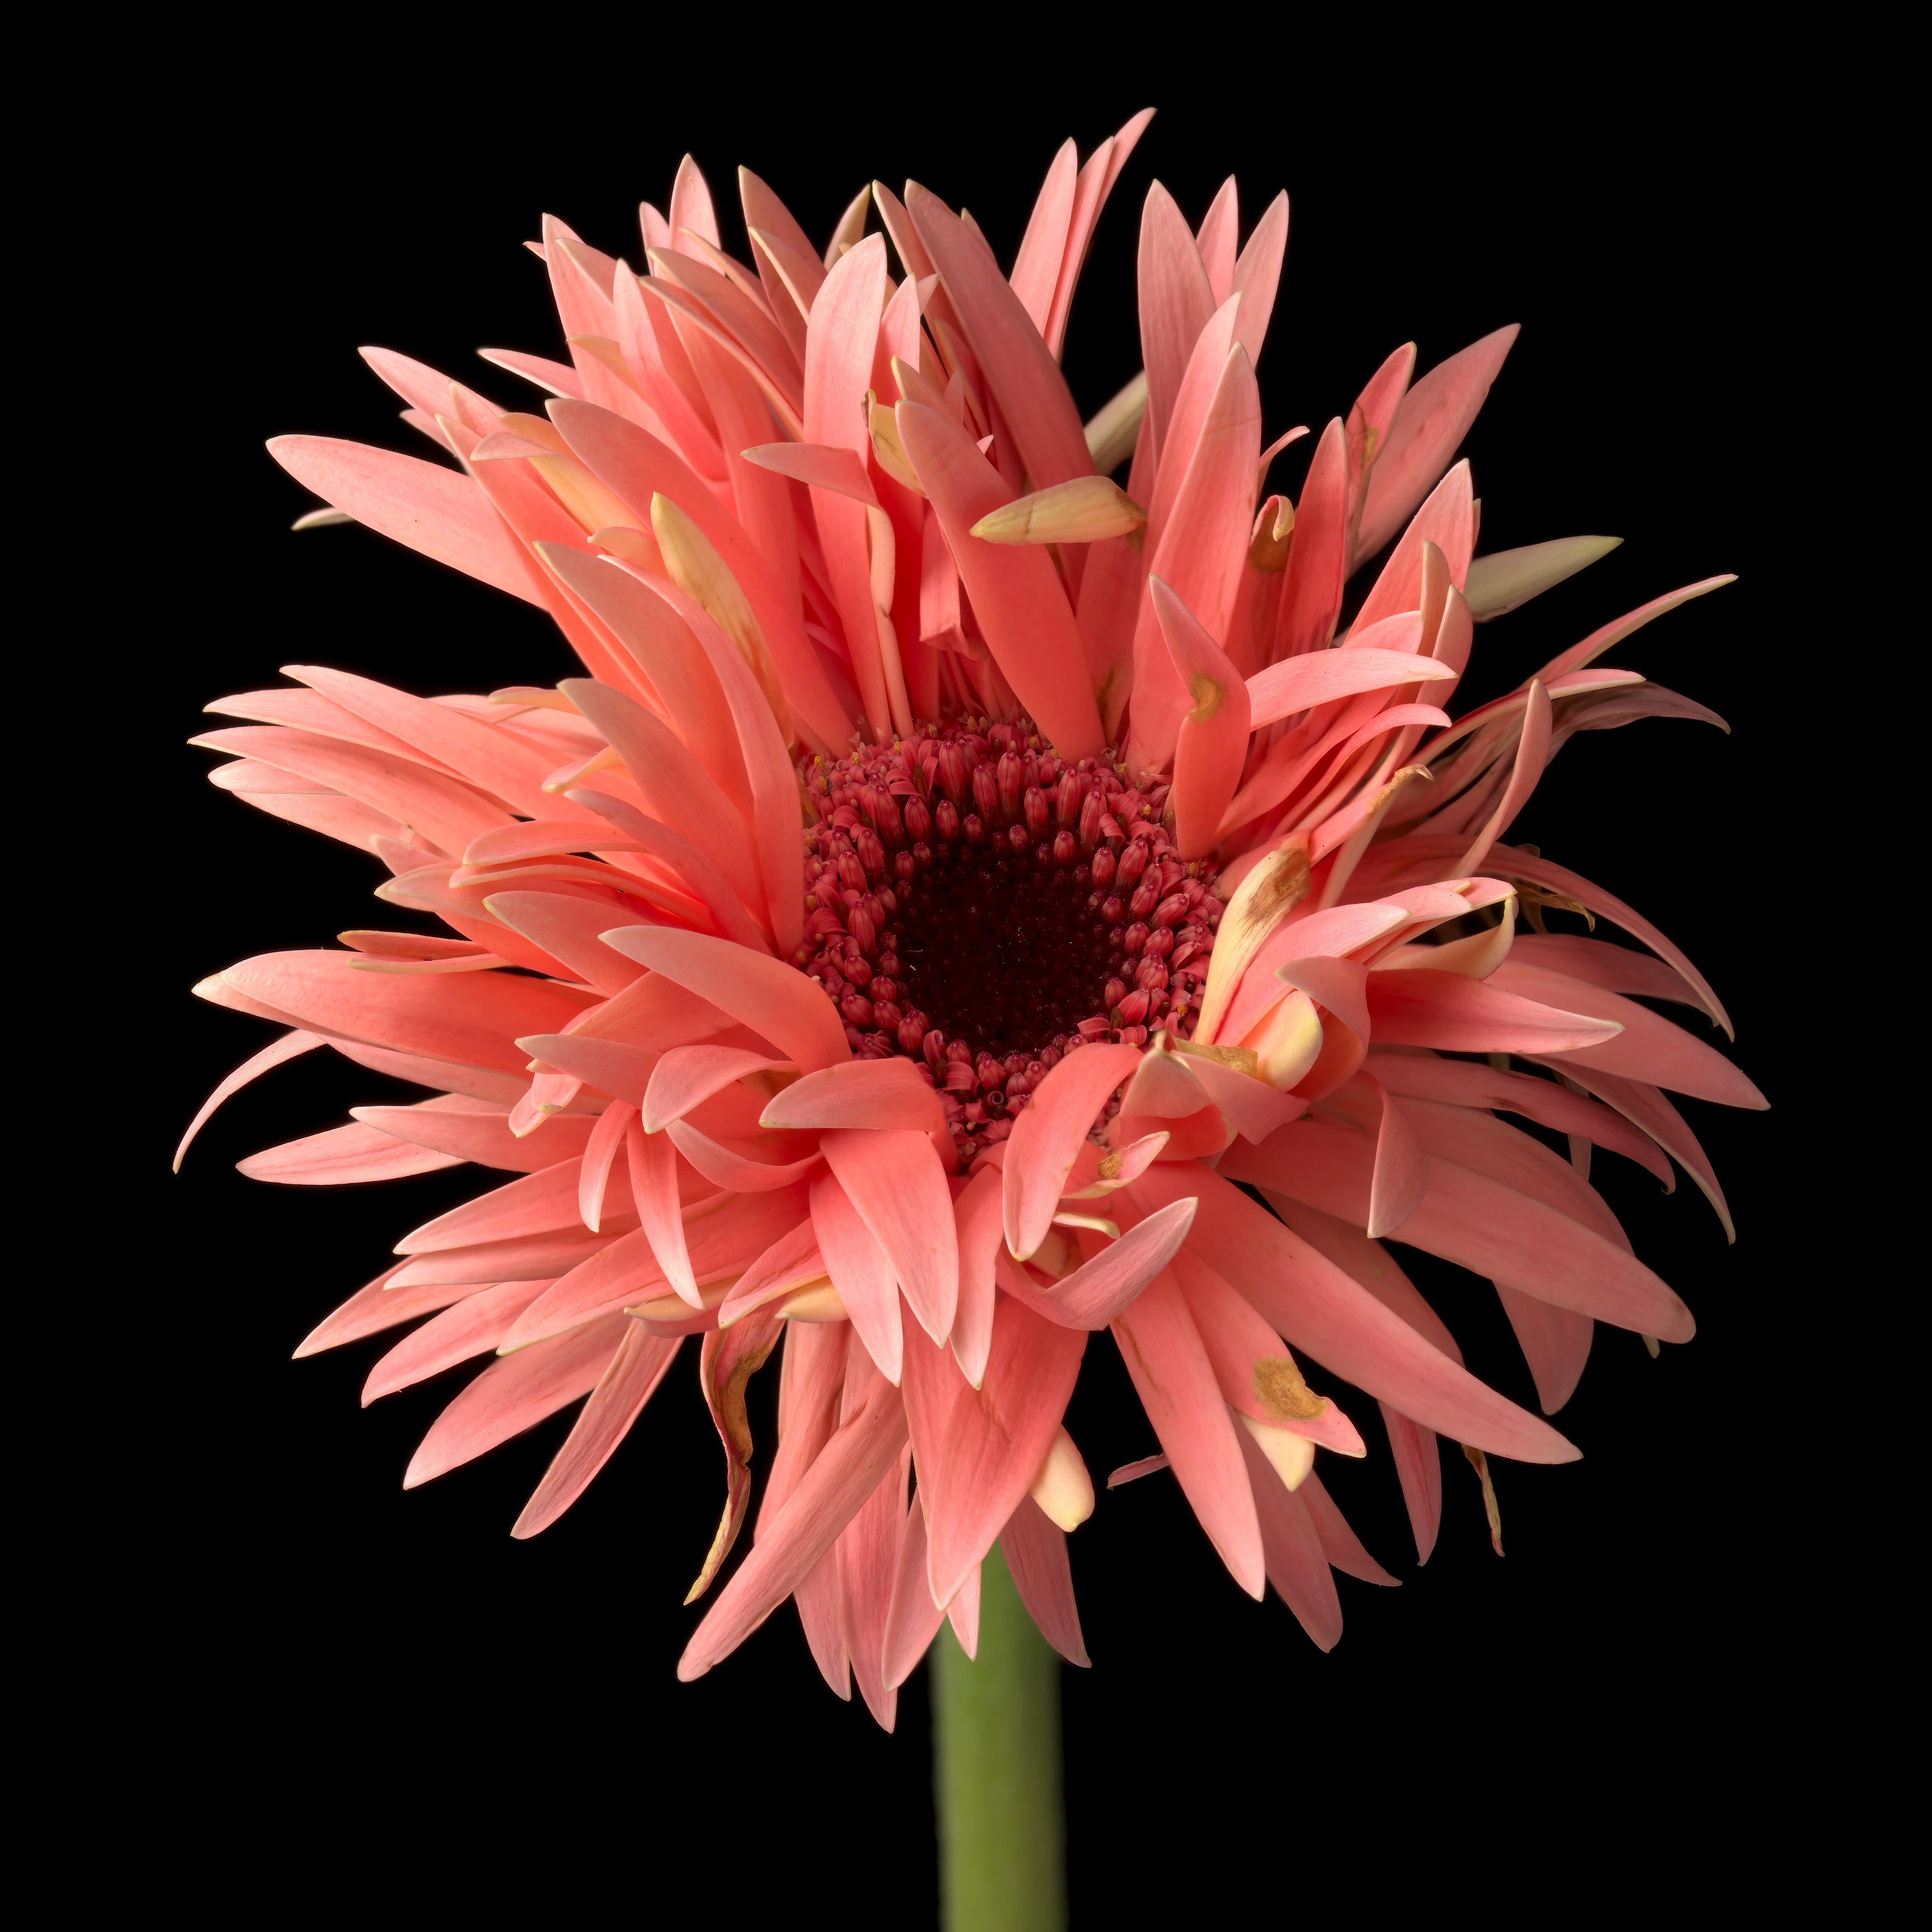 Gerber Daisy 4, photographie couleur, édition limitée, encadrée, botanique, florale - Photograph de Tim Nighswander